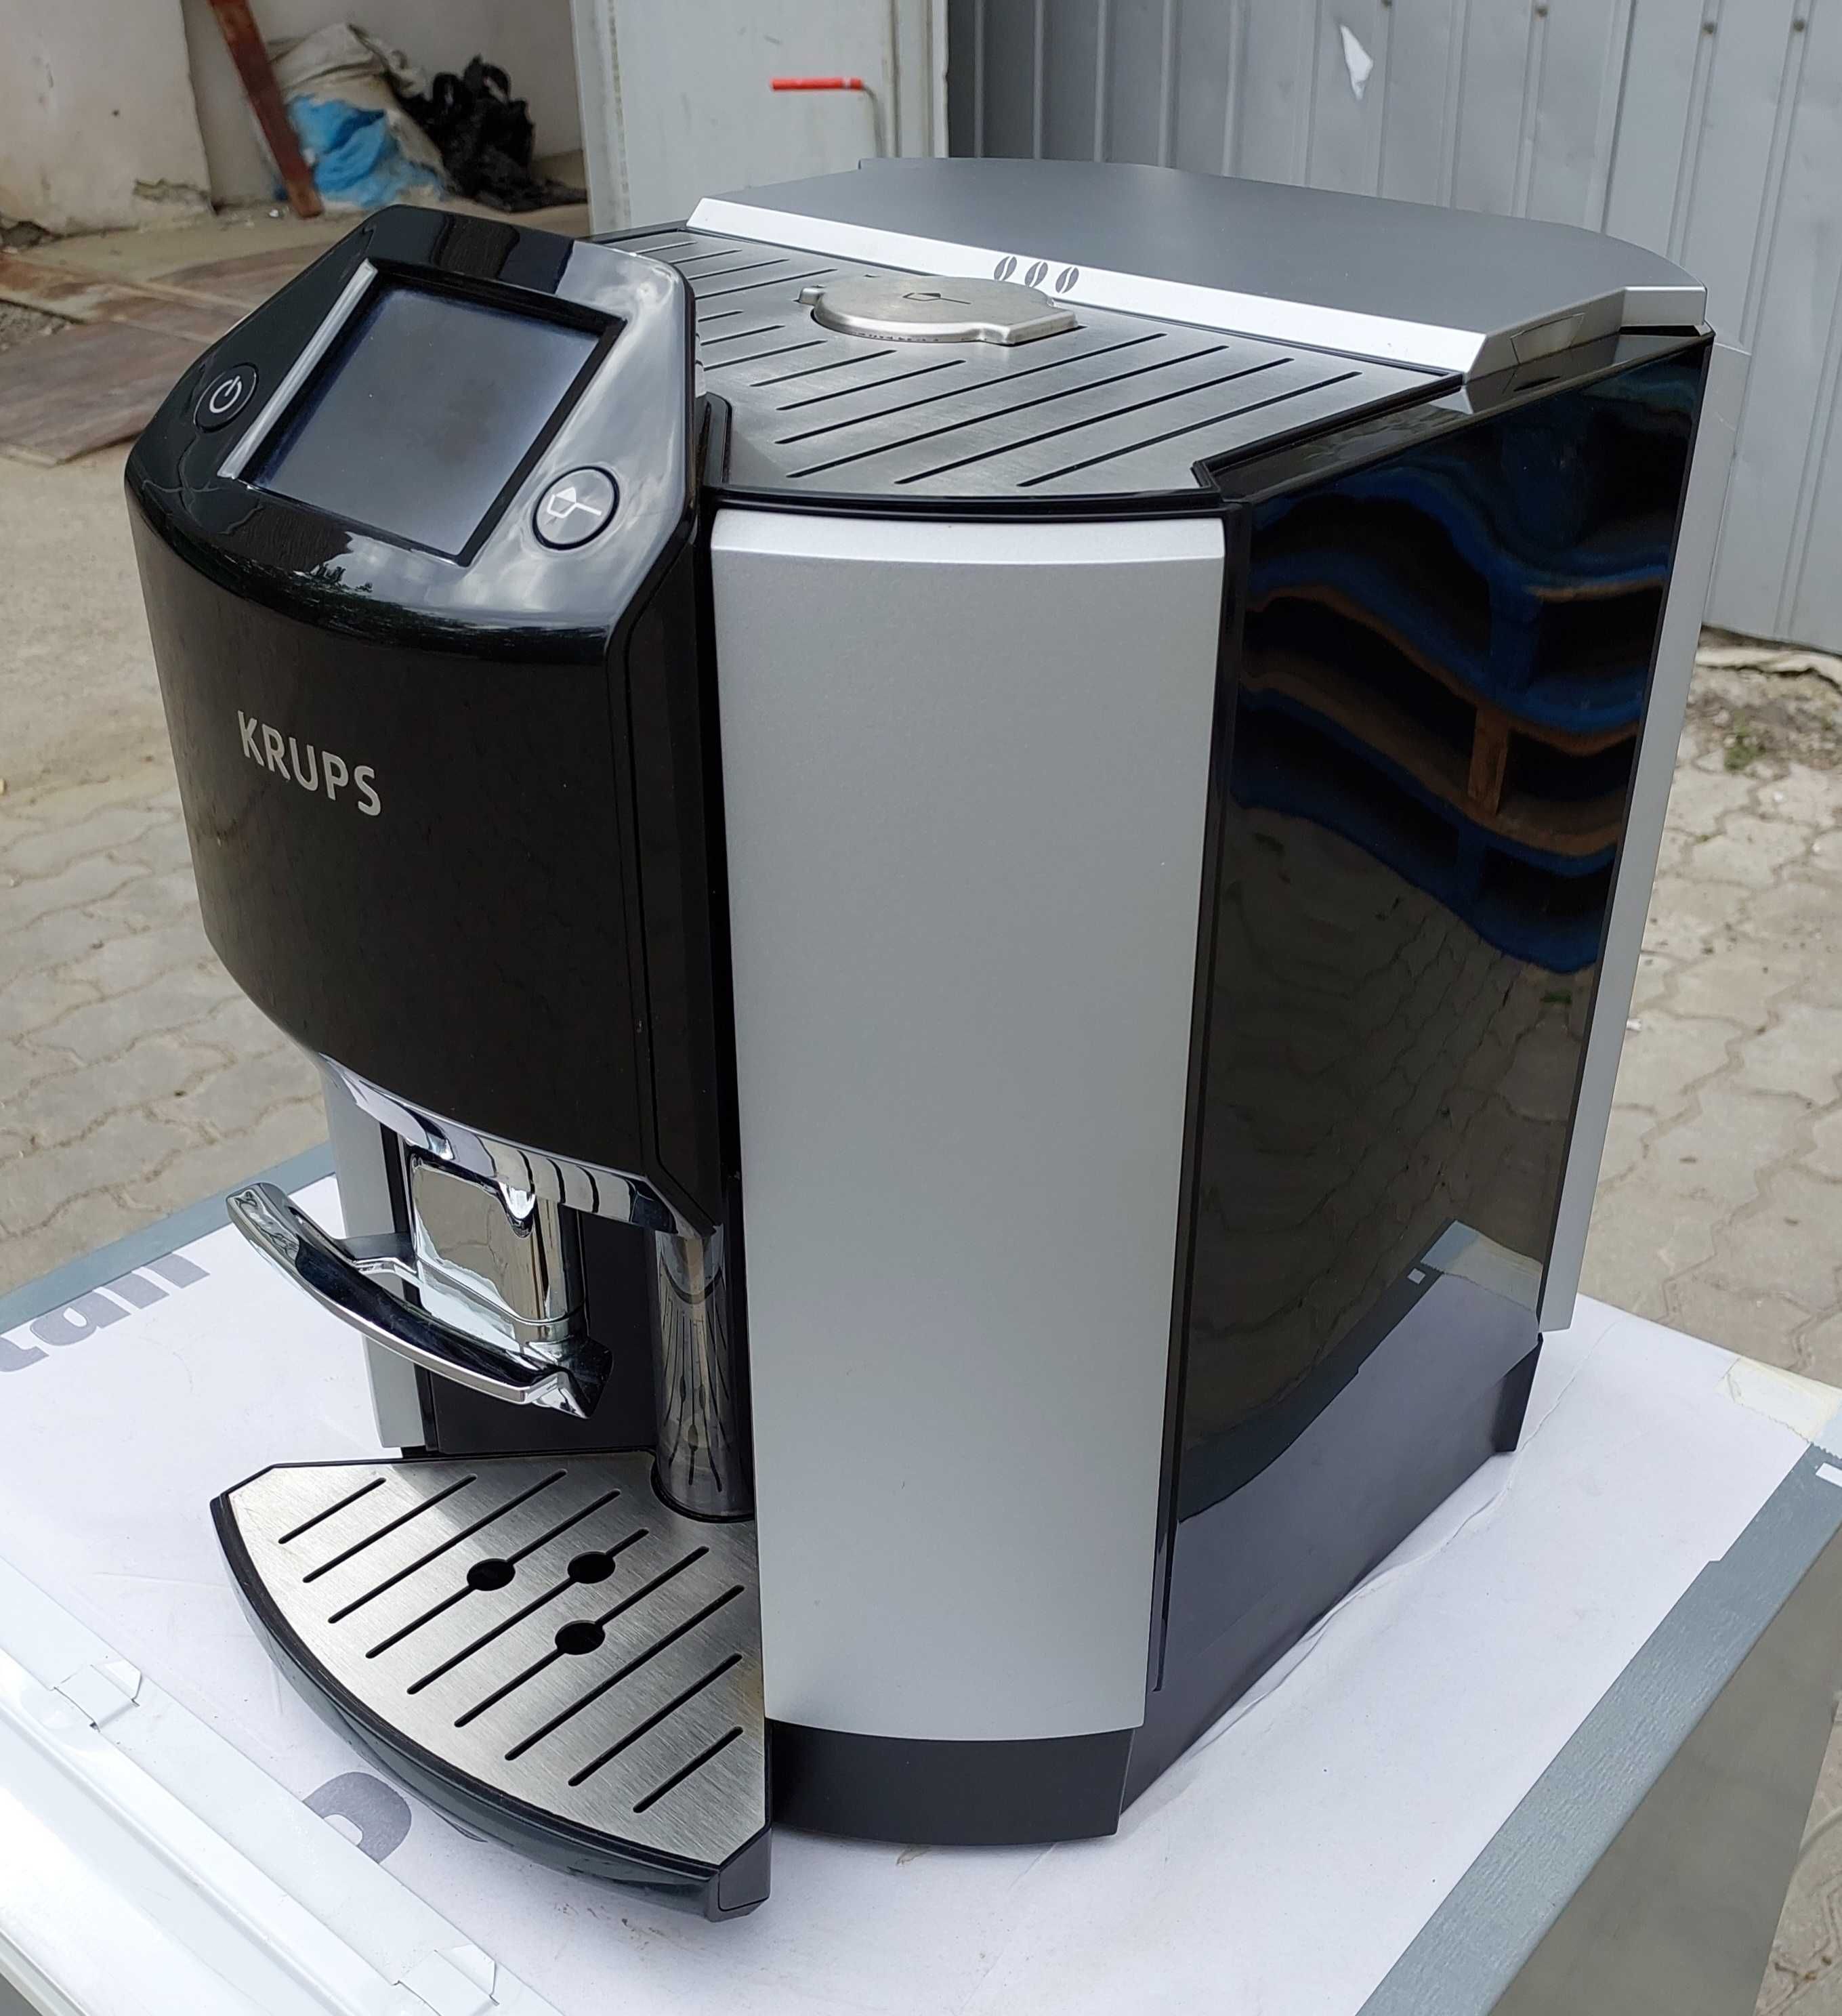 Кофемашина премиум класа Крупс Krups EA 9000 с цветным дисплеем